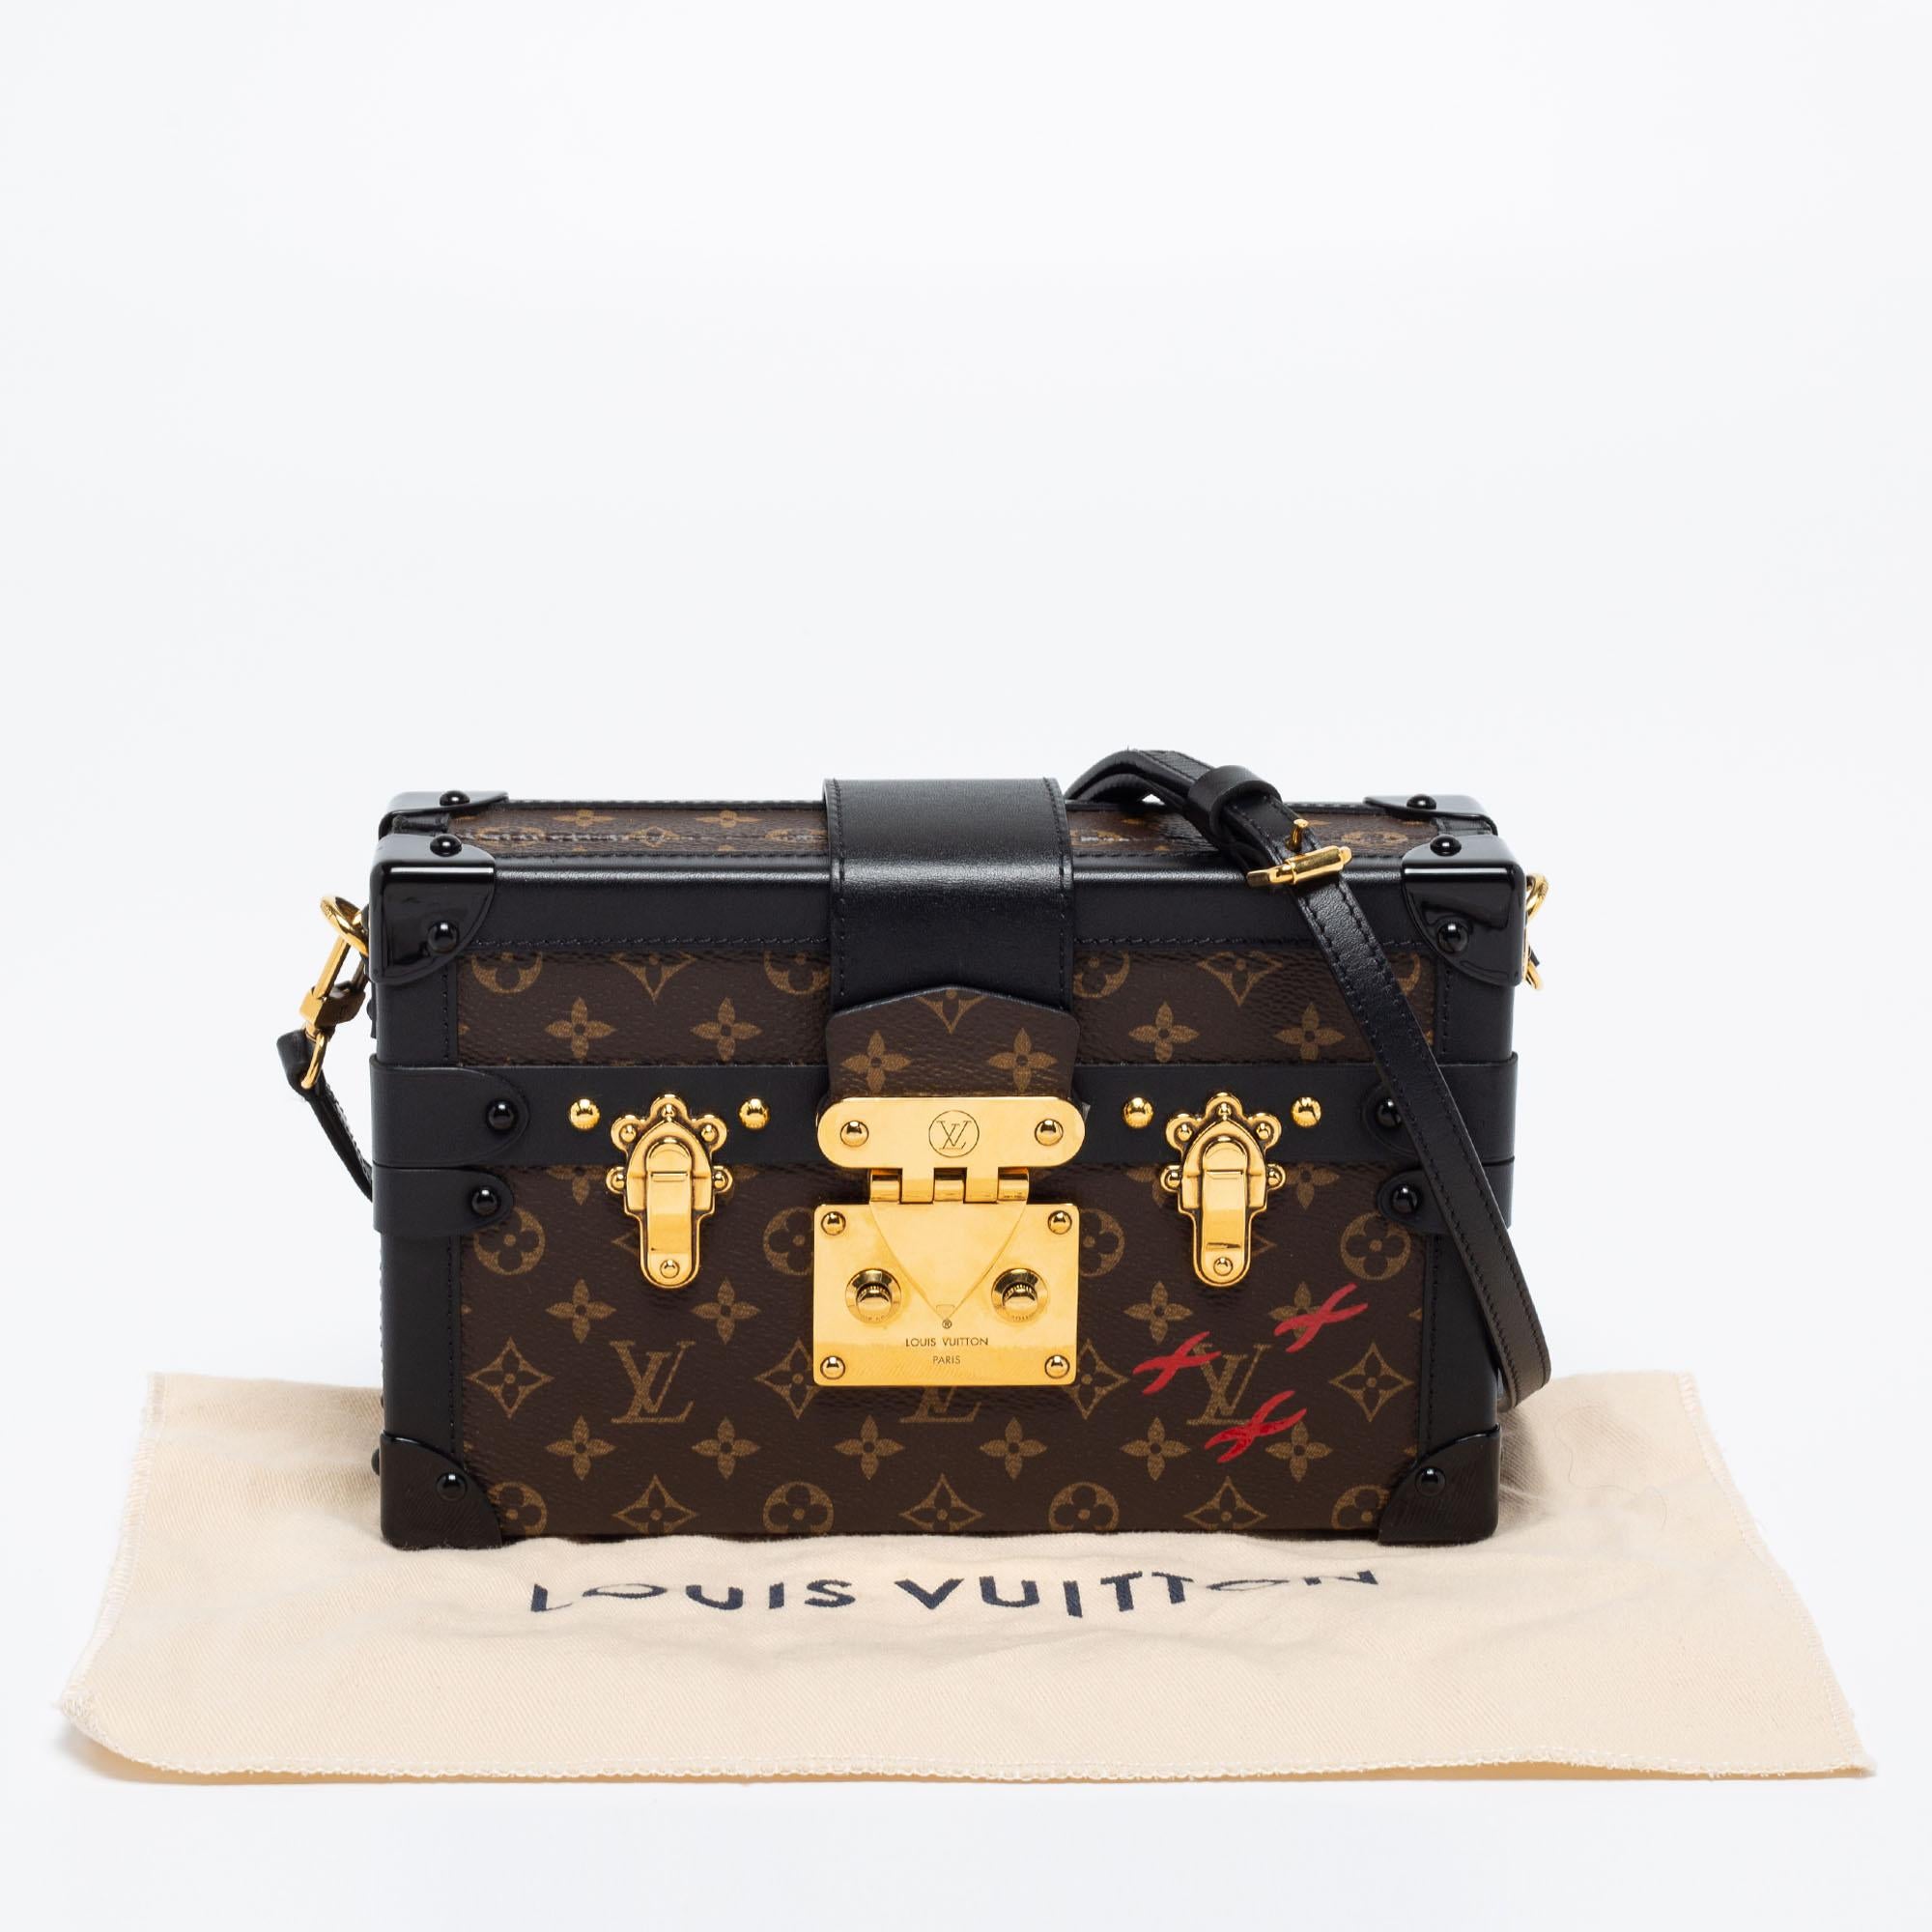 Louis Vuitton Monogram Canvas Petite Malle Bag 5